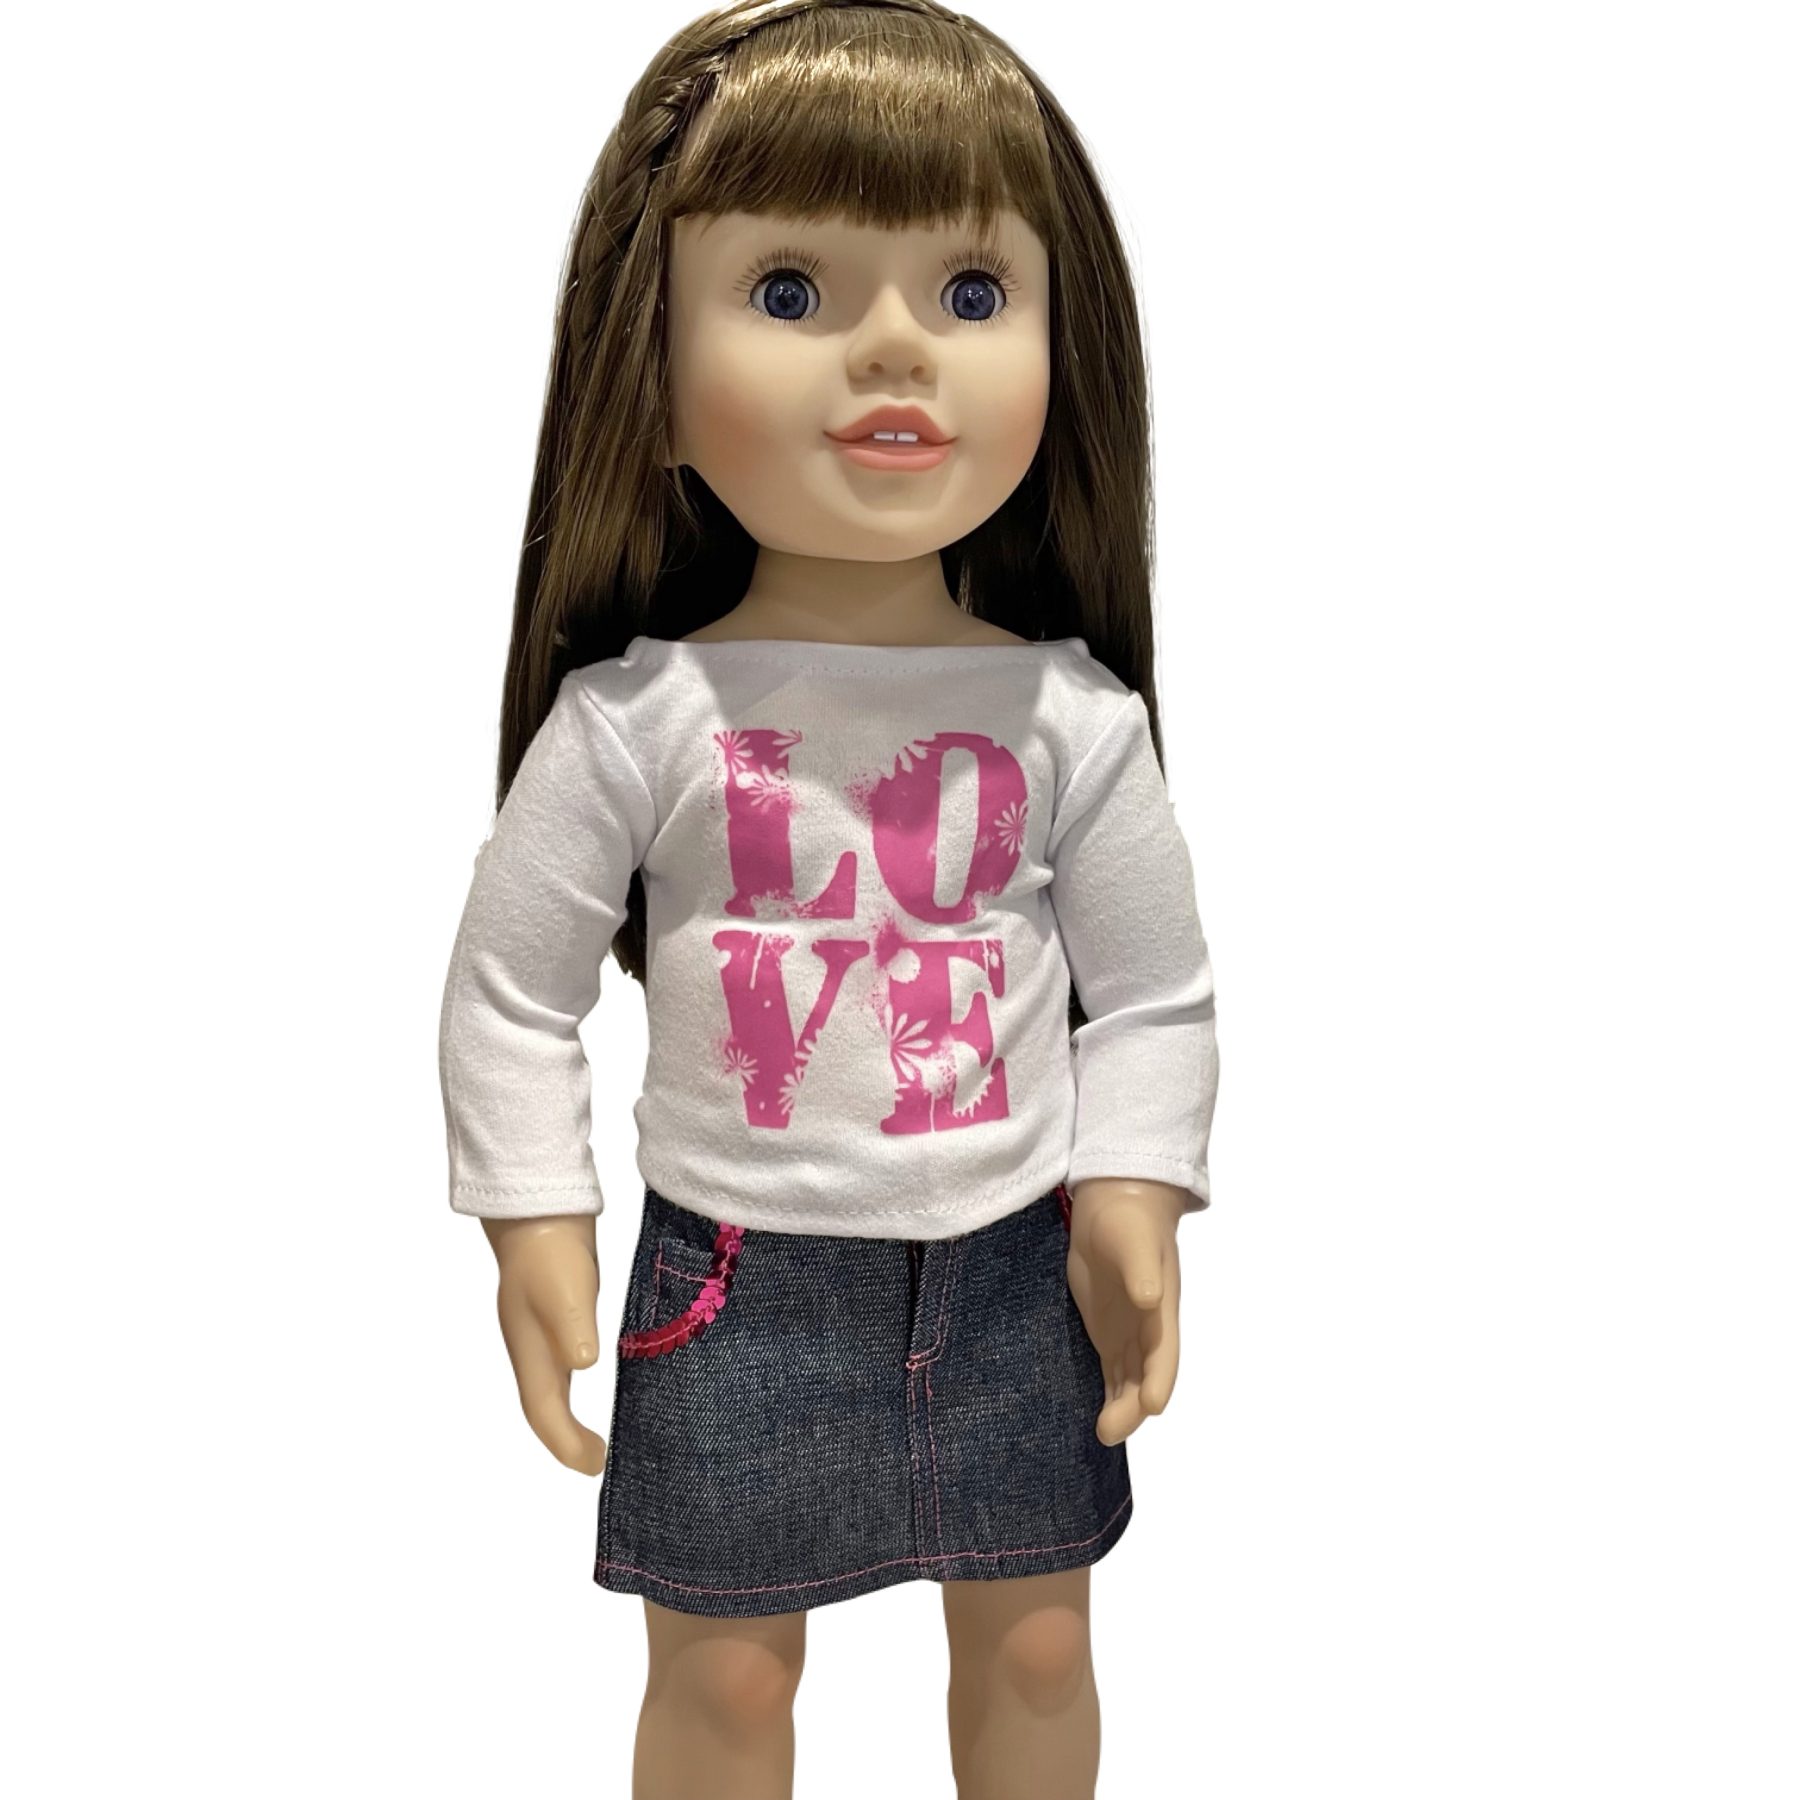 Love T-shirt and Denim Skirt Set - Australian Girl Dolls